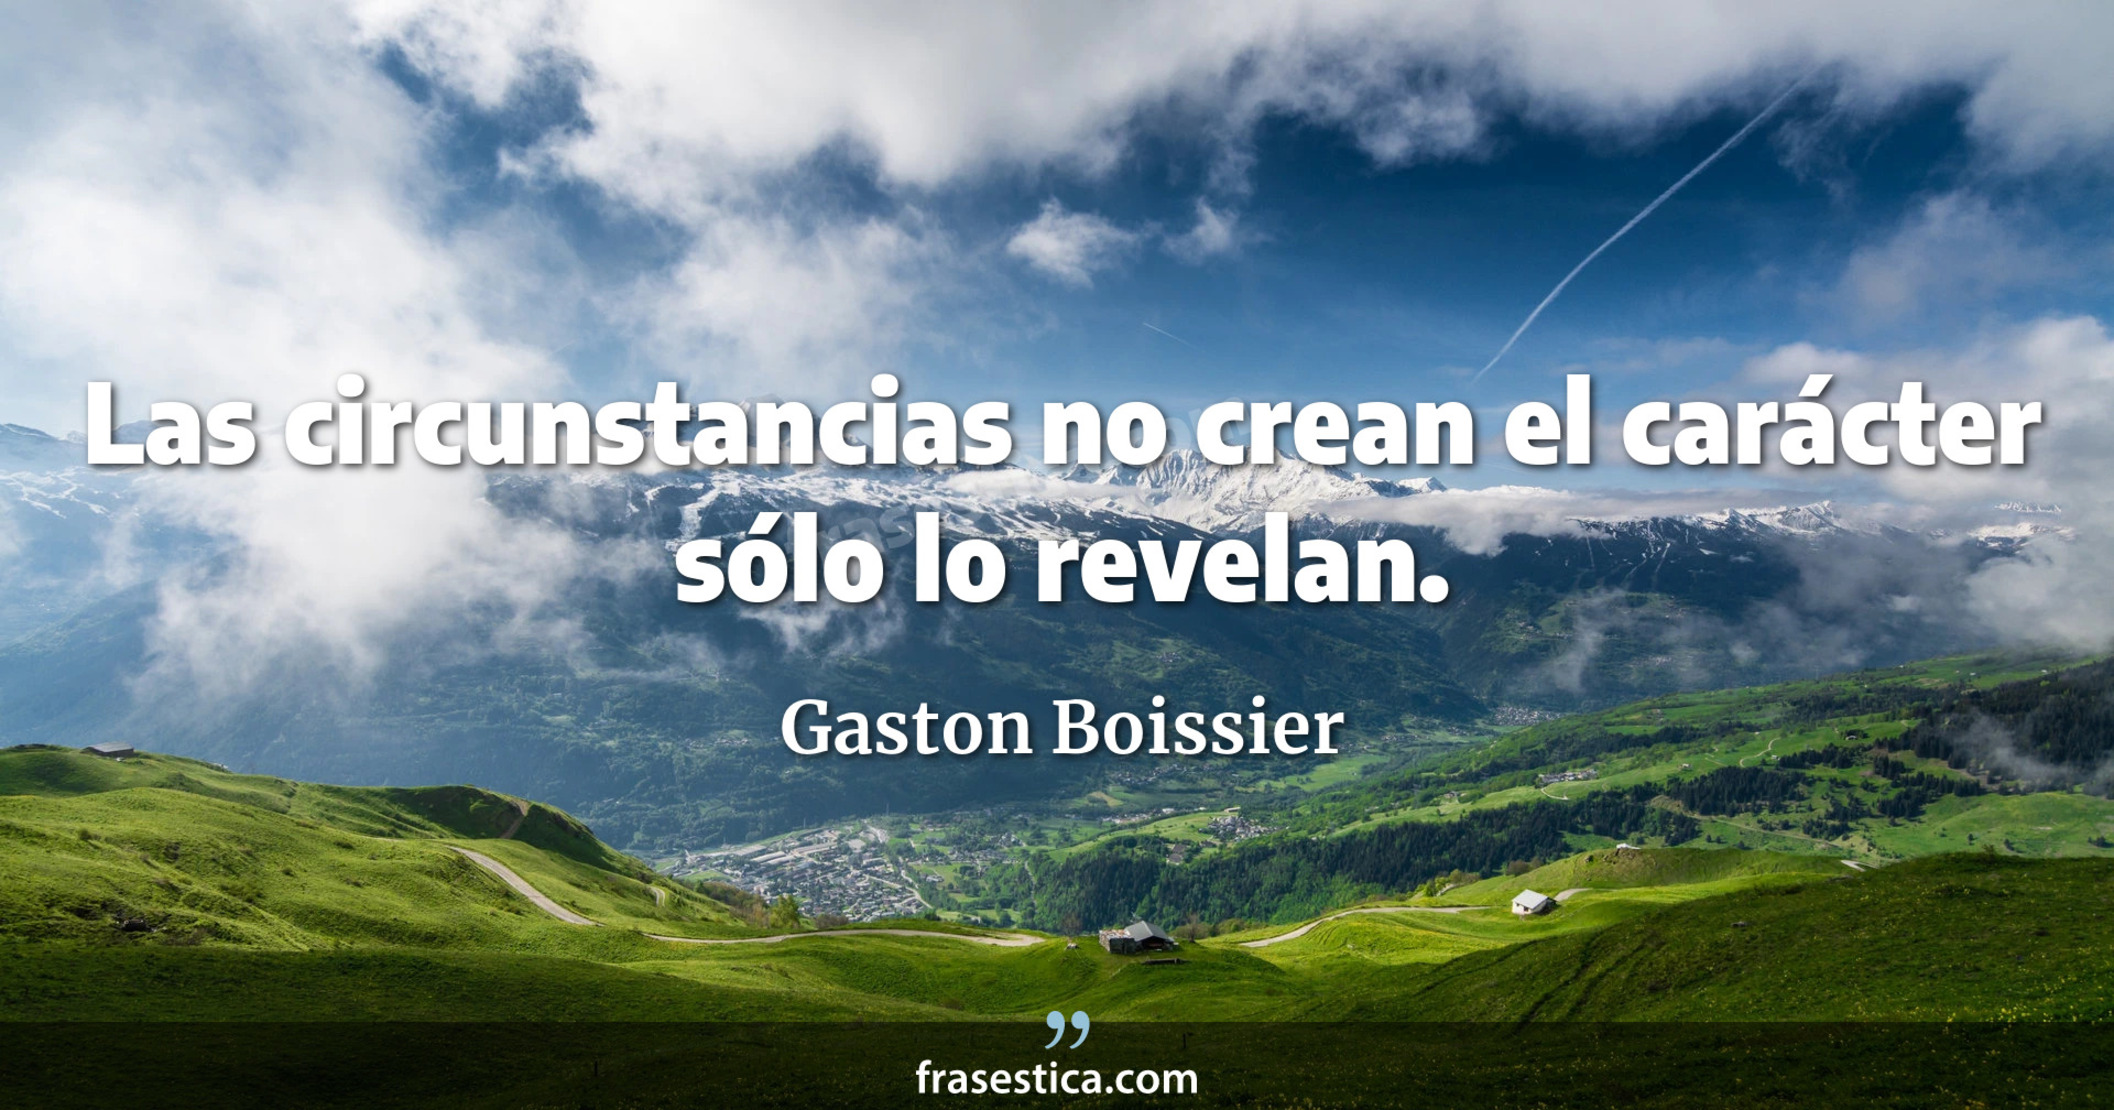 Las circunstancias no crean el carácter sólo lo revelan. - Gaston Boissier